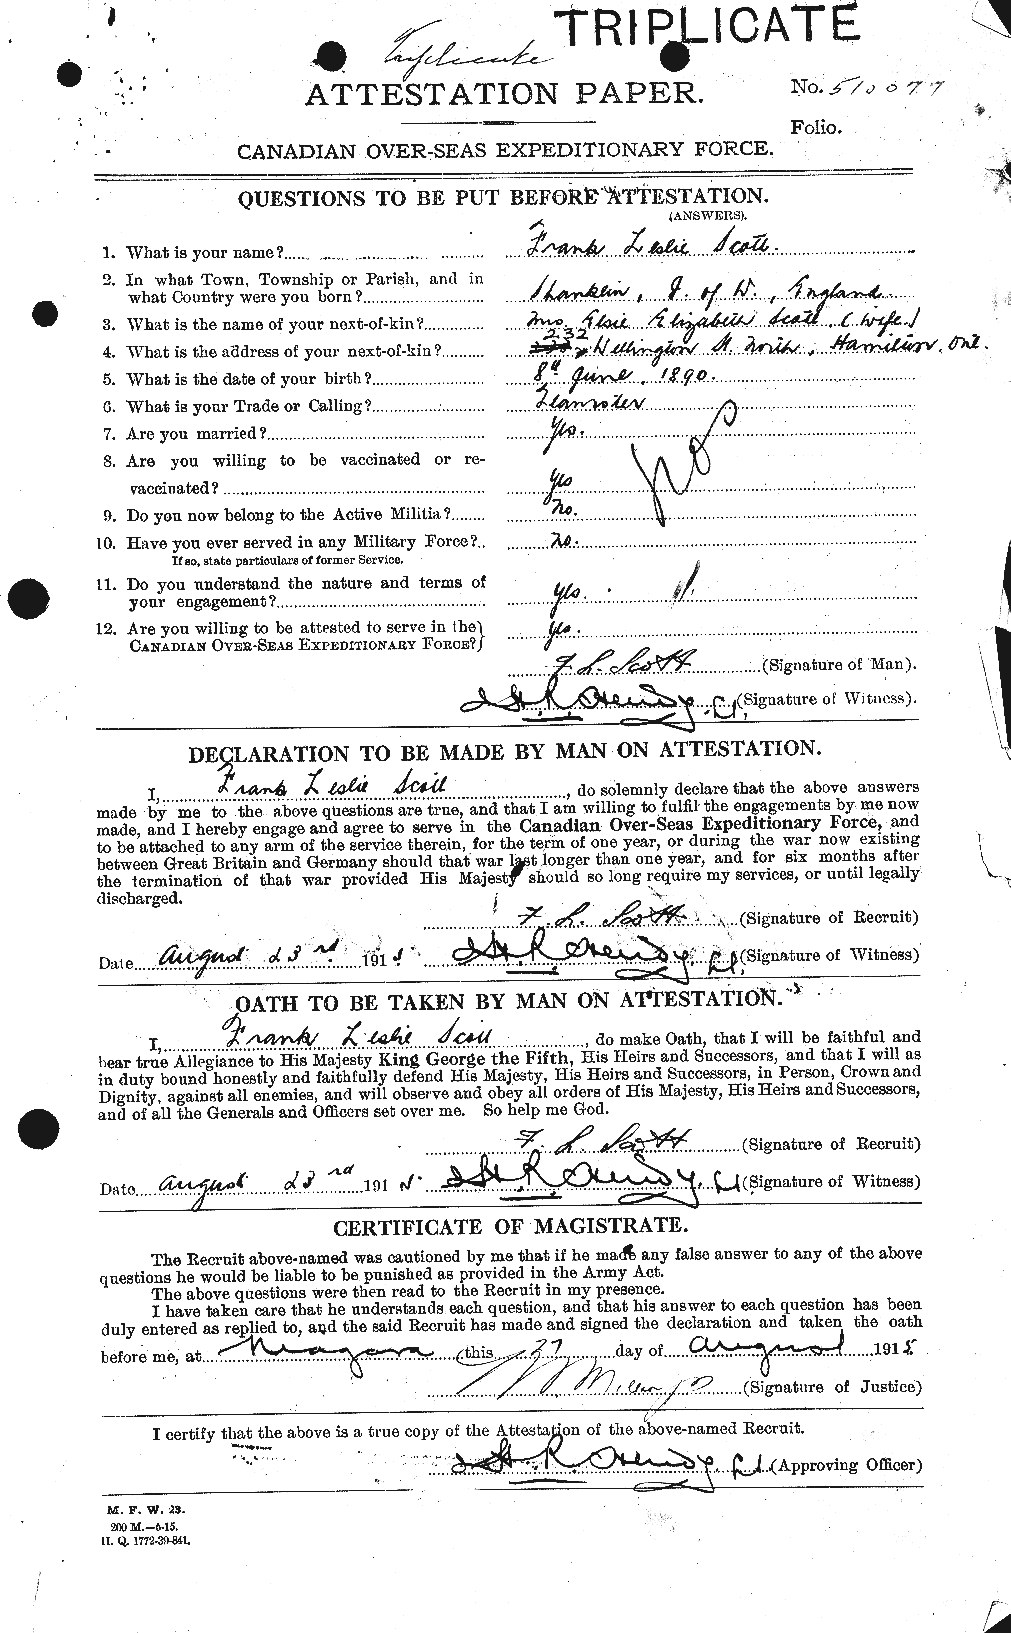 Dossiers du Personnel de la Première Guerre mondiale - CEC 084699a